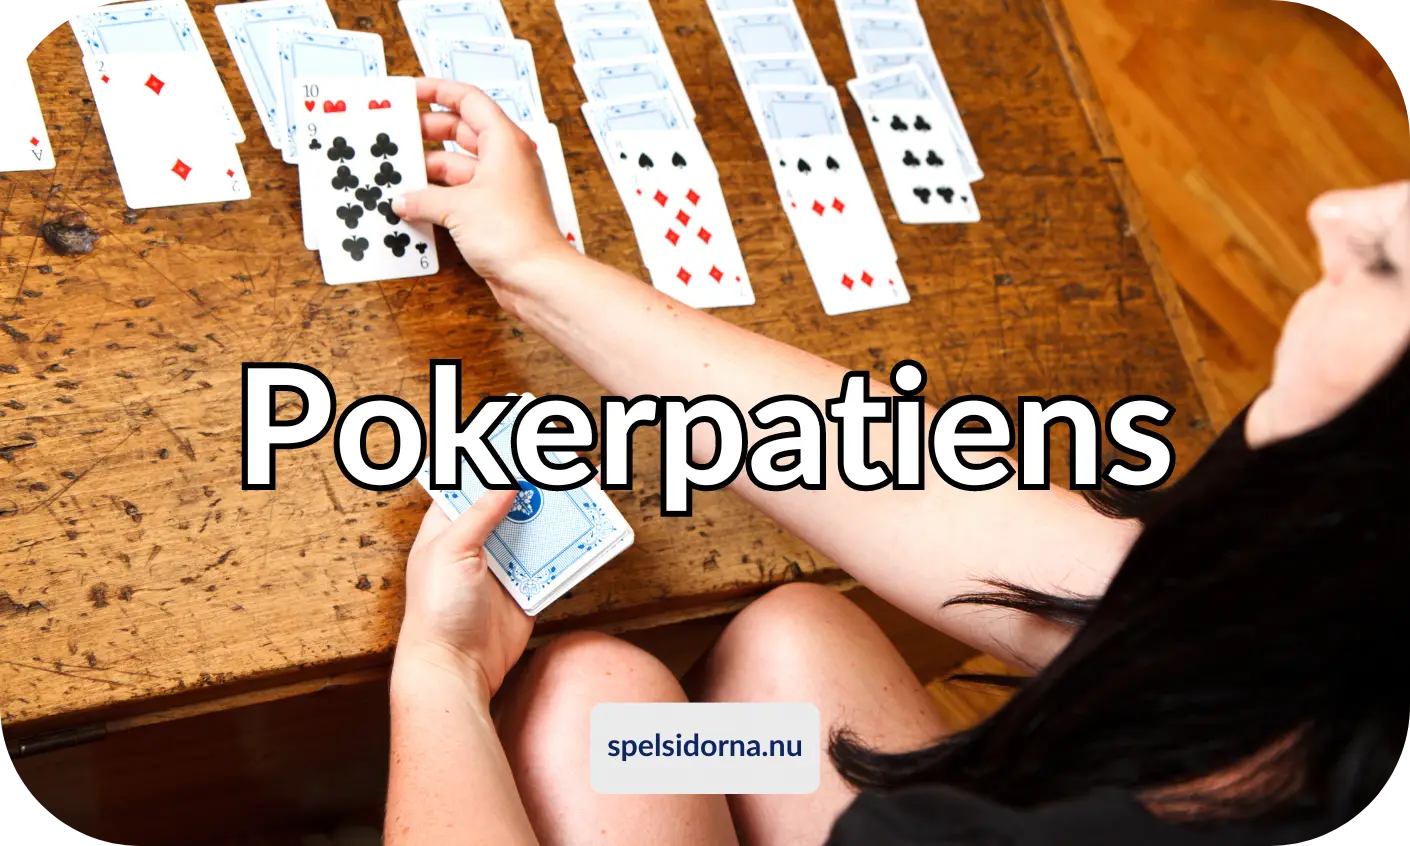 Pokerpatiens